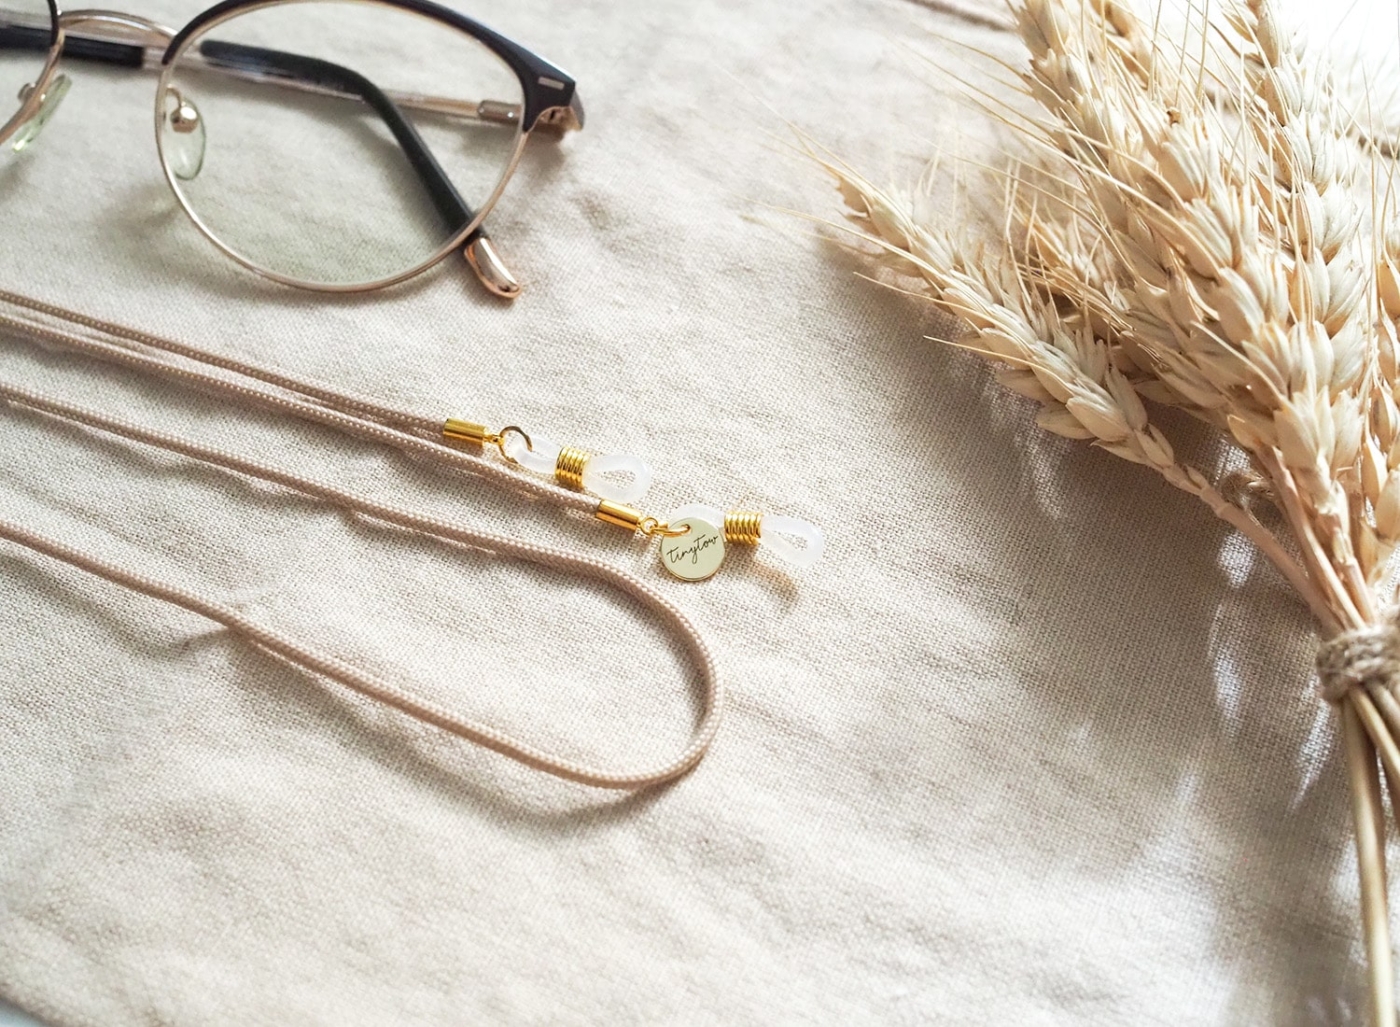 Brillenband in beige mit goldenen Details.